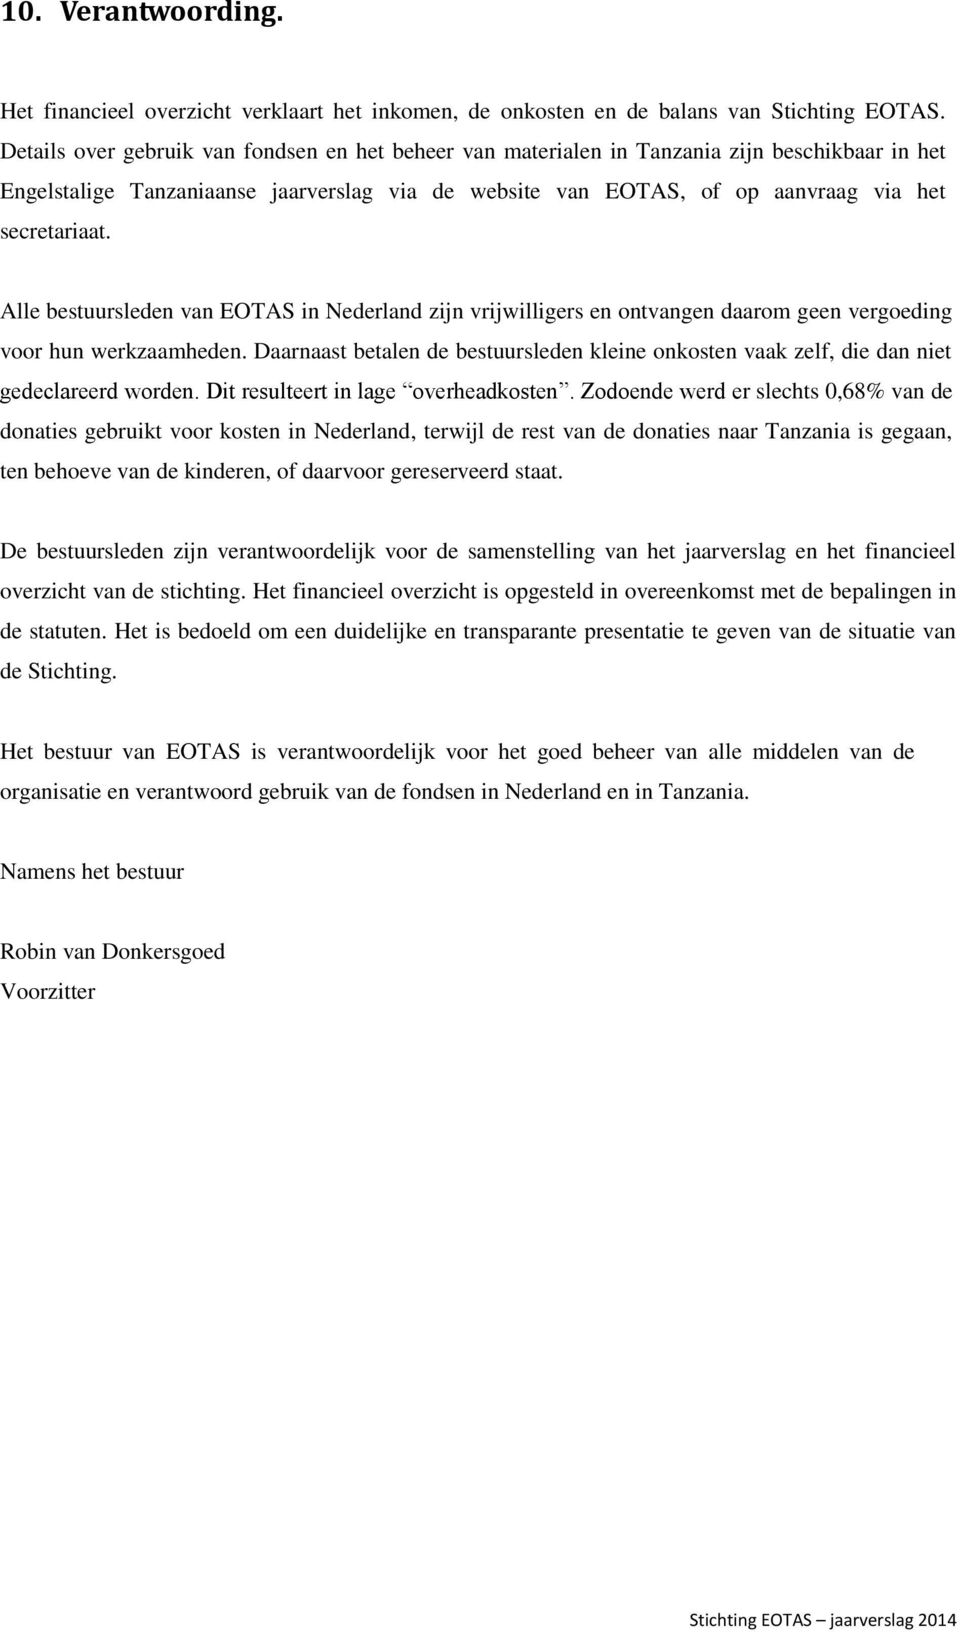 Alle bestuursleden van EOTAS in Nederland zijn vrijwilligers en ontvangen daarom geen vergoeding voor hun werkzaamheden.